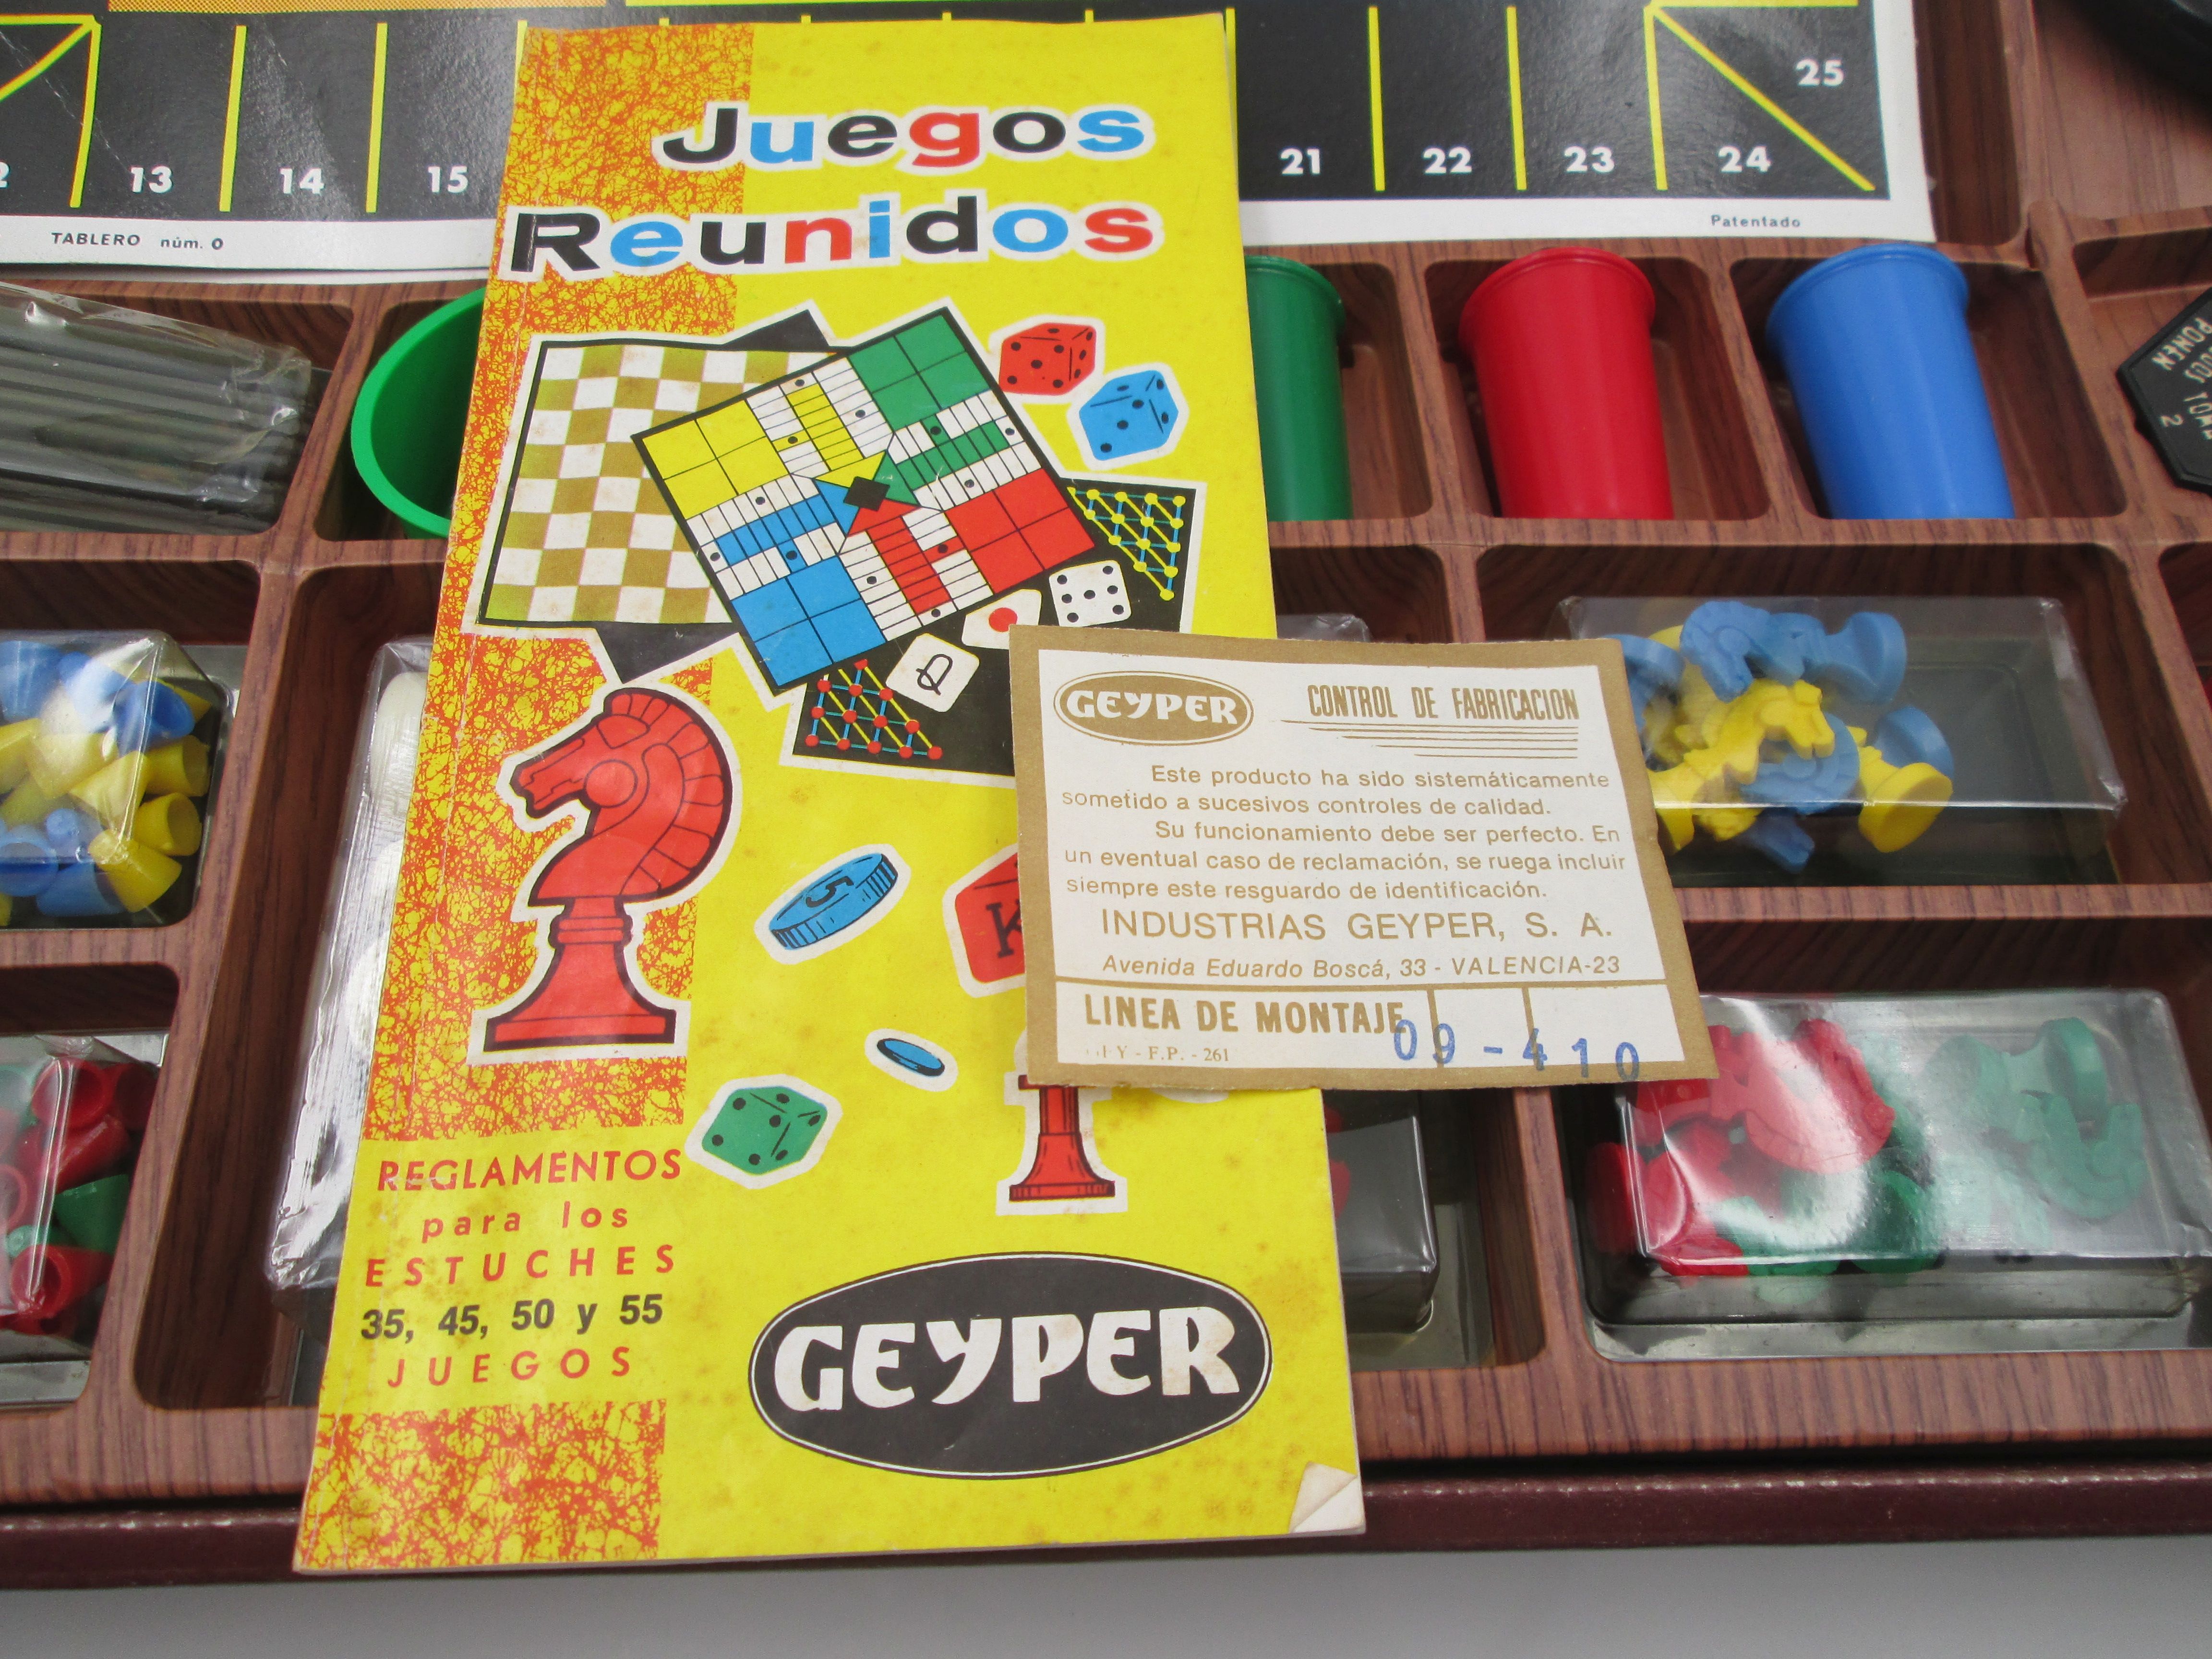 Juegos Reunidos Geyper 45 Caja Instrucciones Garantia 1980